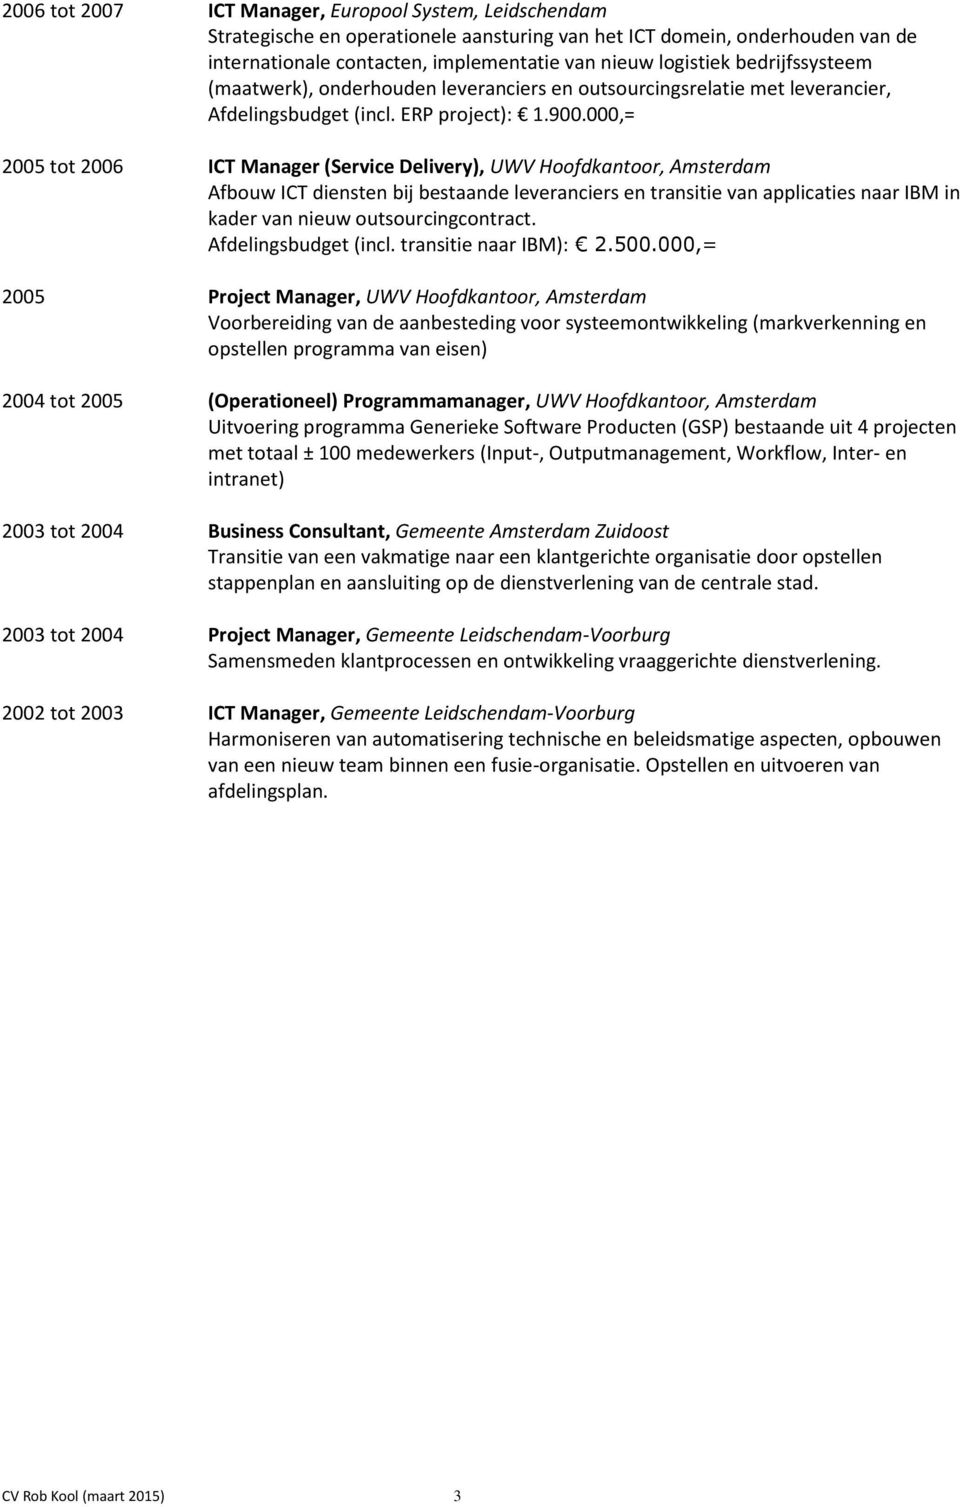 000,= 2005 tot 2006 ICT Manager (Service Delivery), UWV Hoofdkantoor, Amsterdam Afbouw ICT diensten bij bestaande leveranciers en transitie van applicaties naar IBM in kader van nieuw